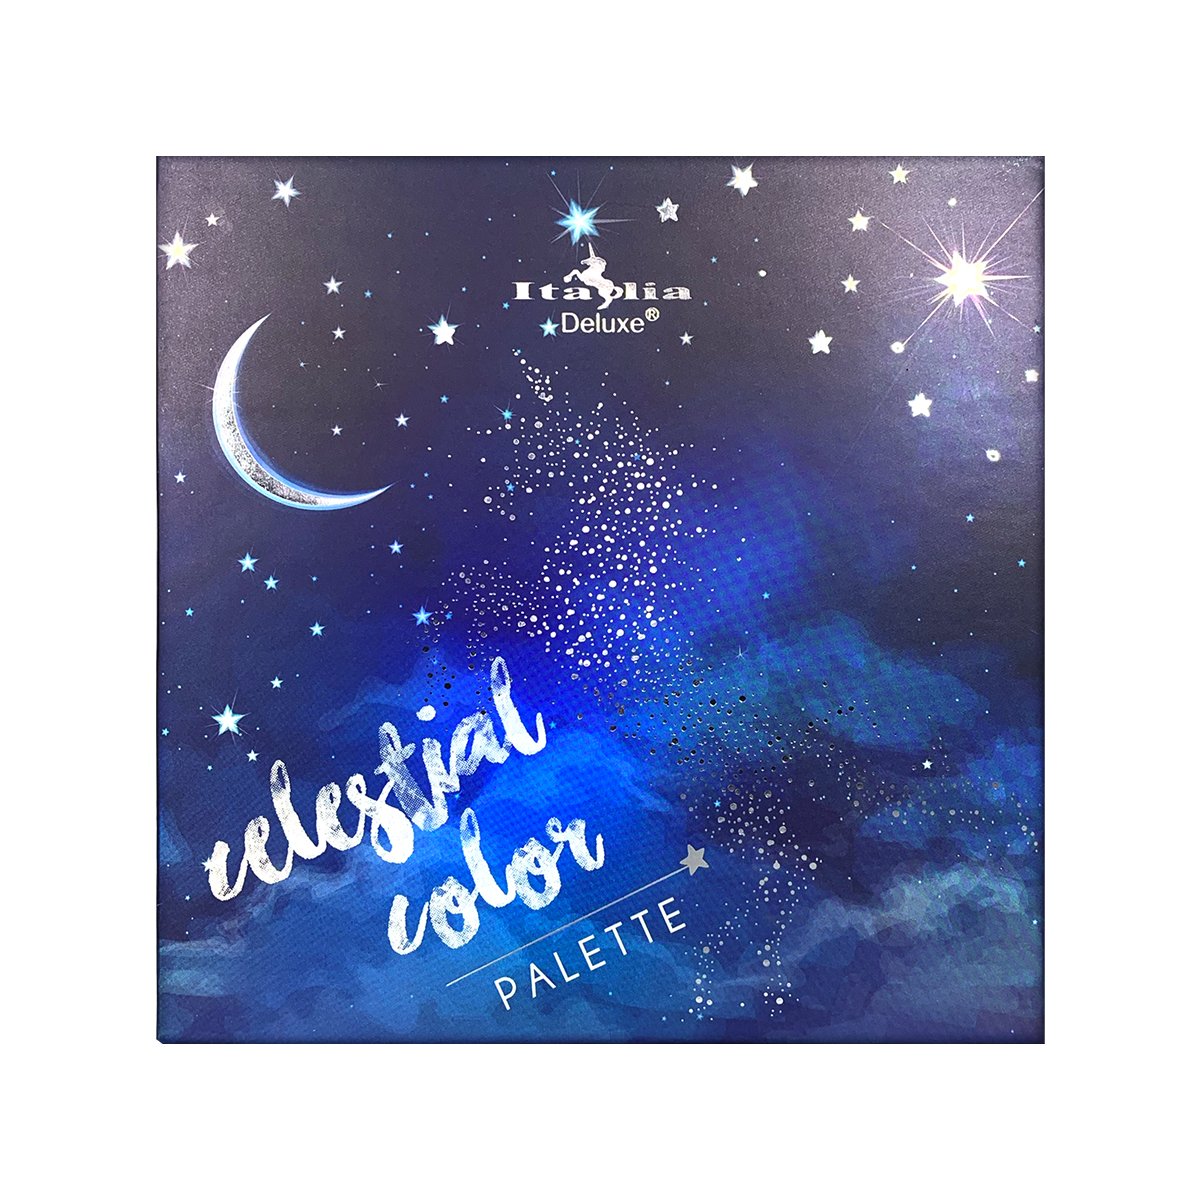 Italia Deluxe - Astrology Celestial Palette